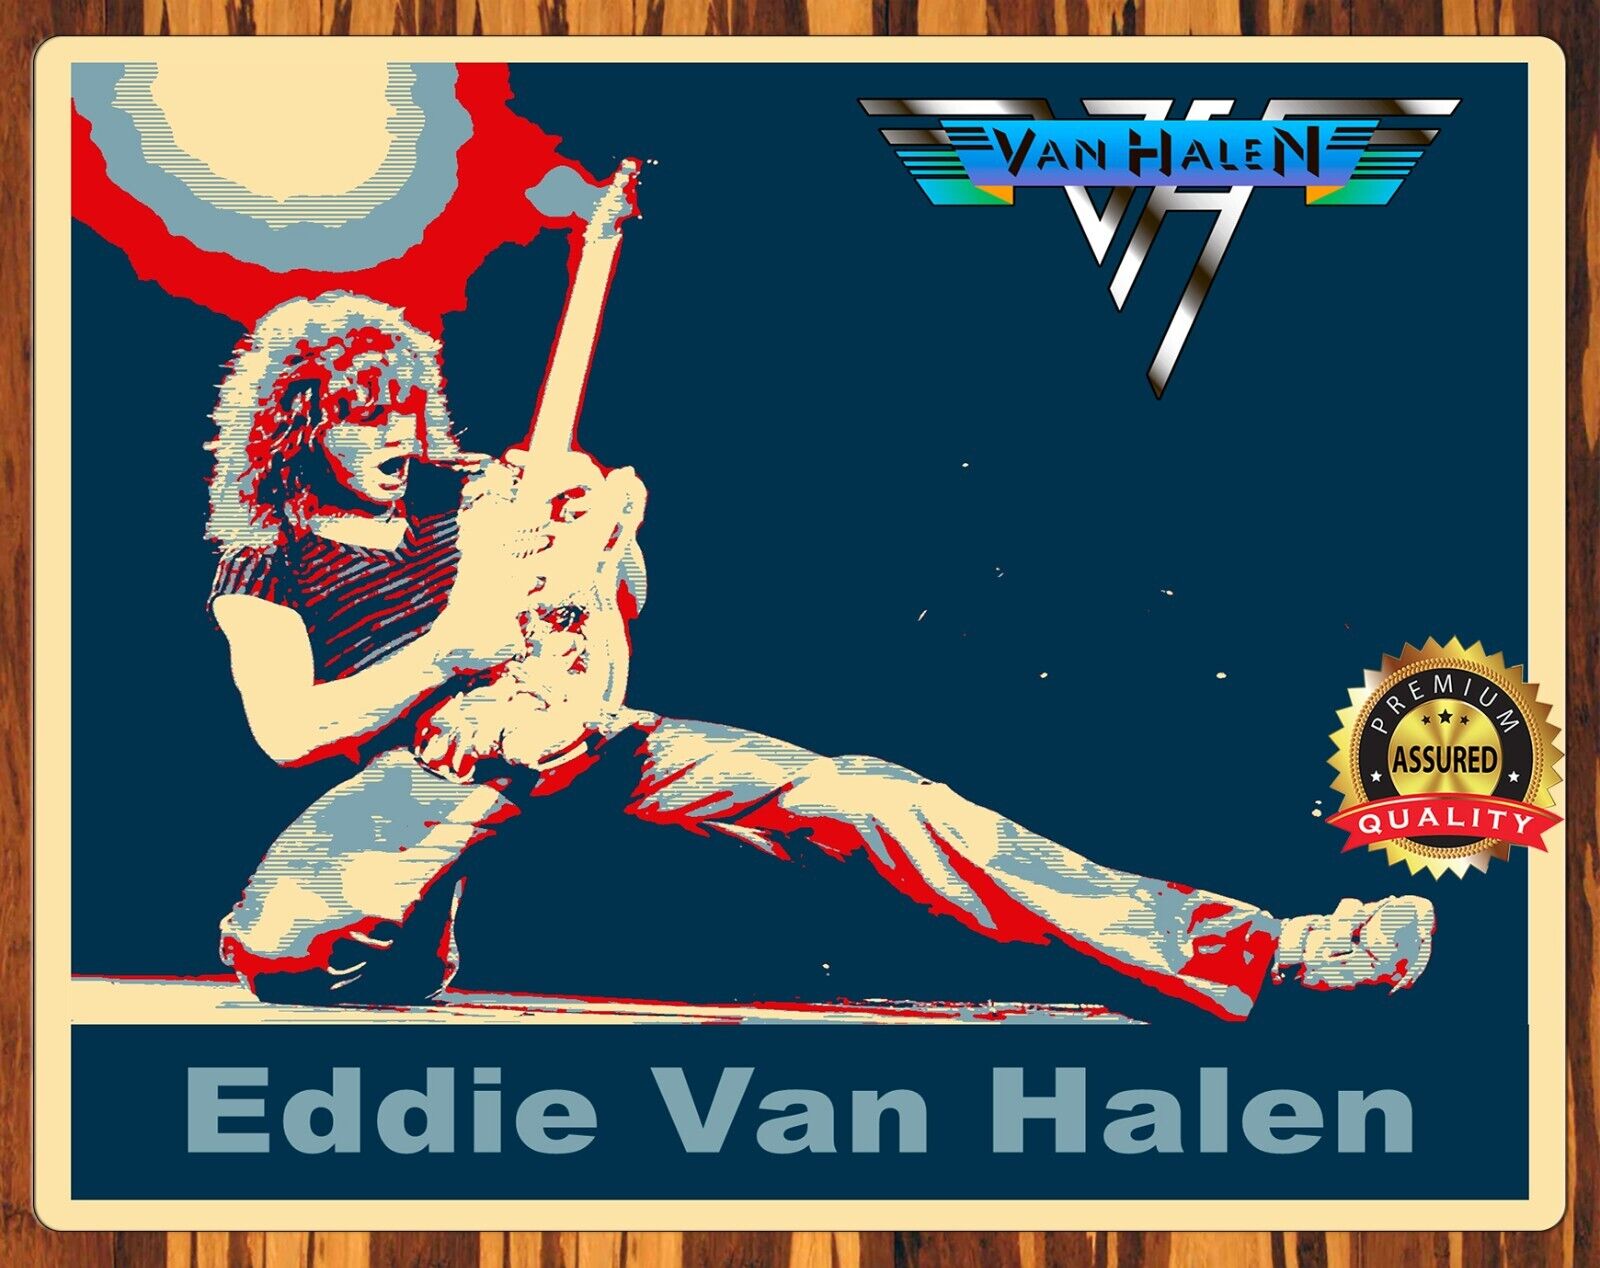 Eddie Van Halen - Van Halen - Rock - Metal Sign 11 x 14